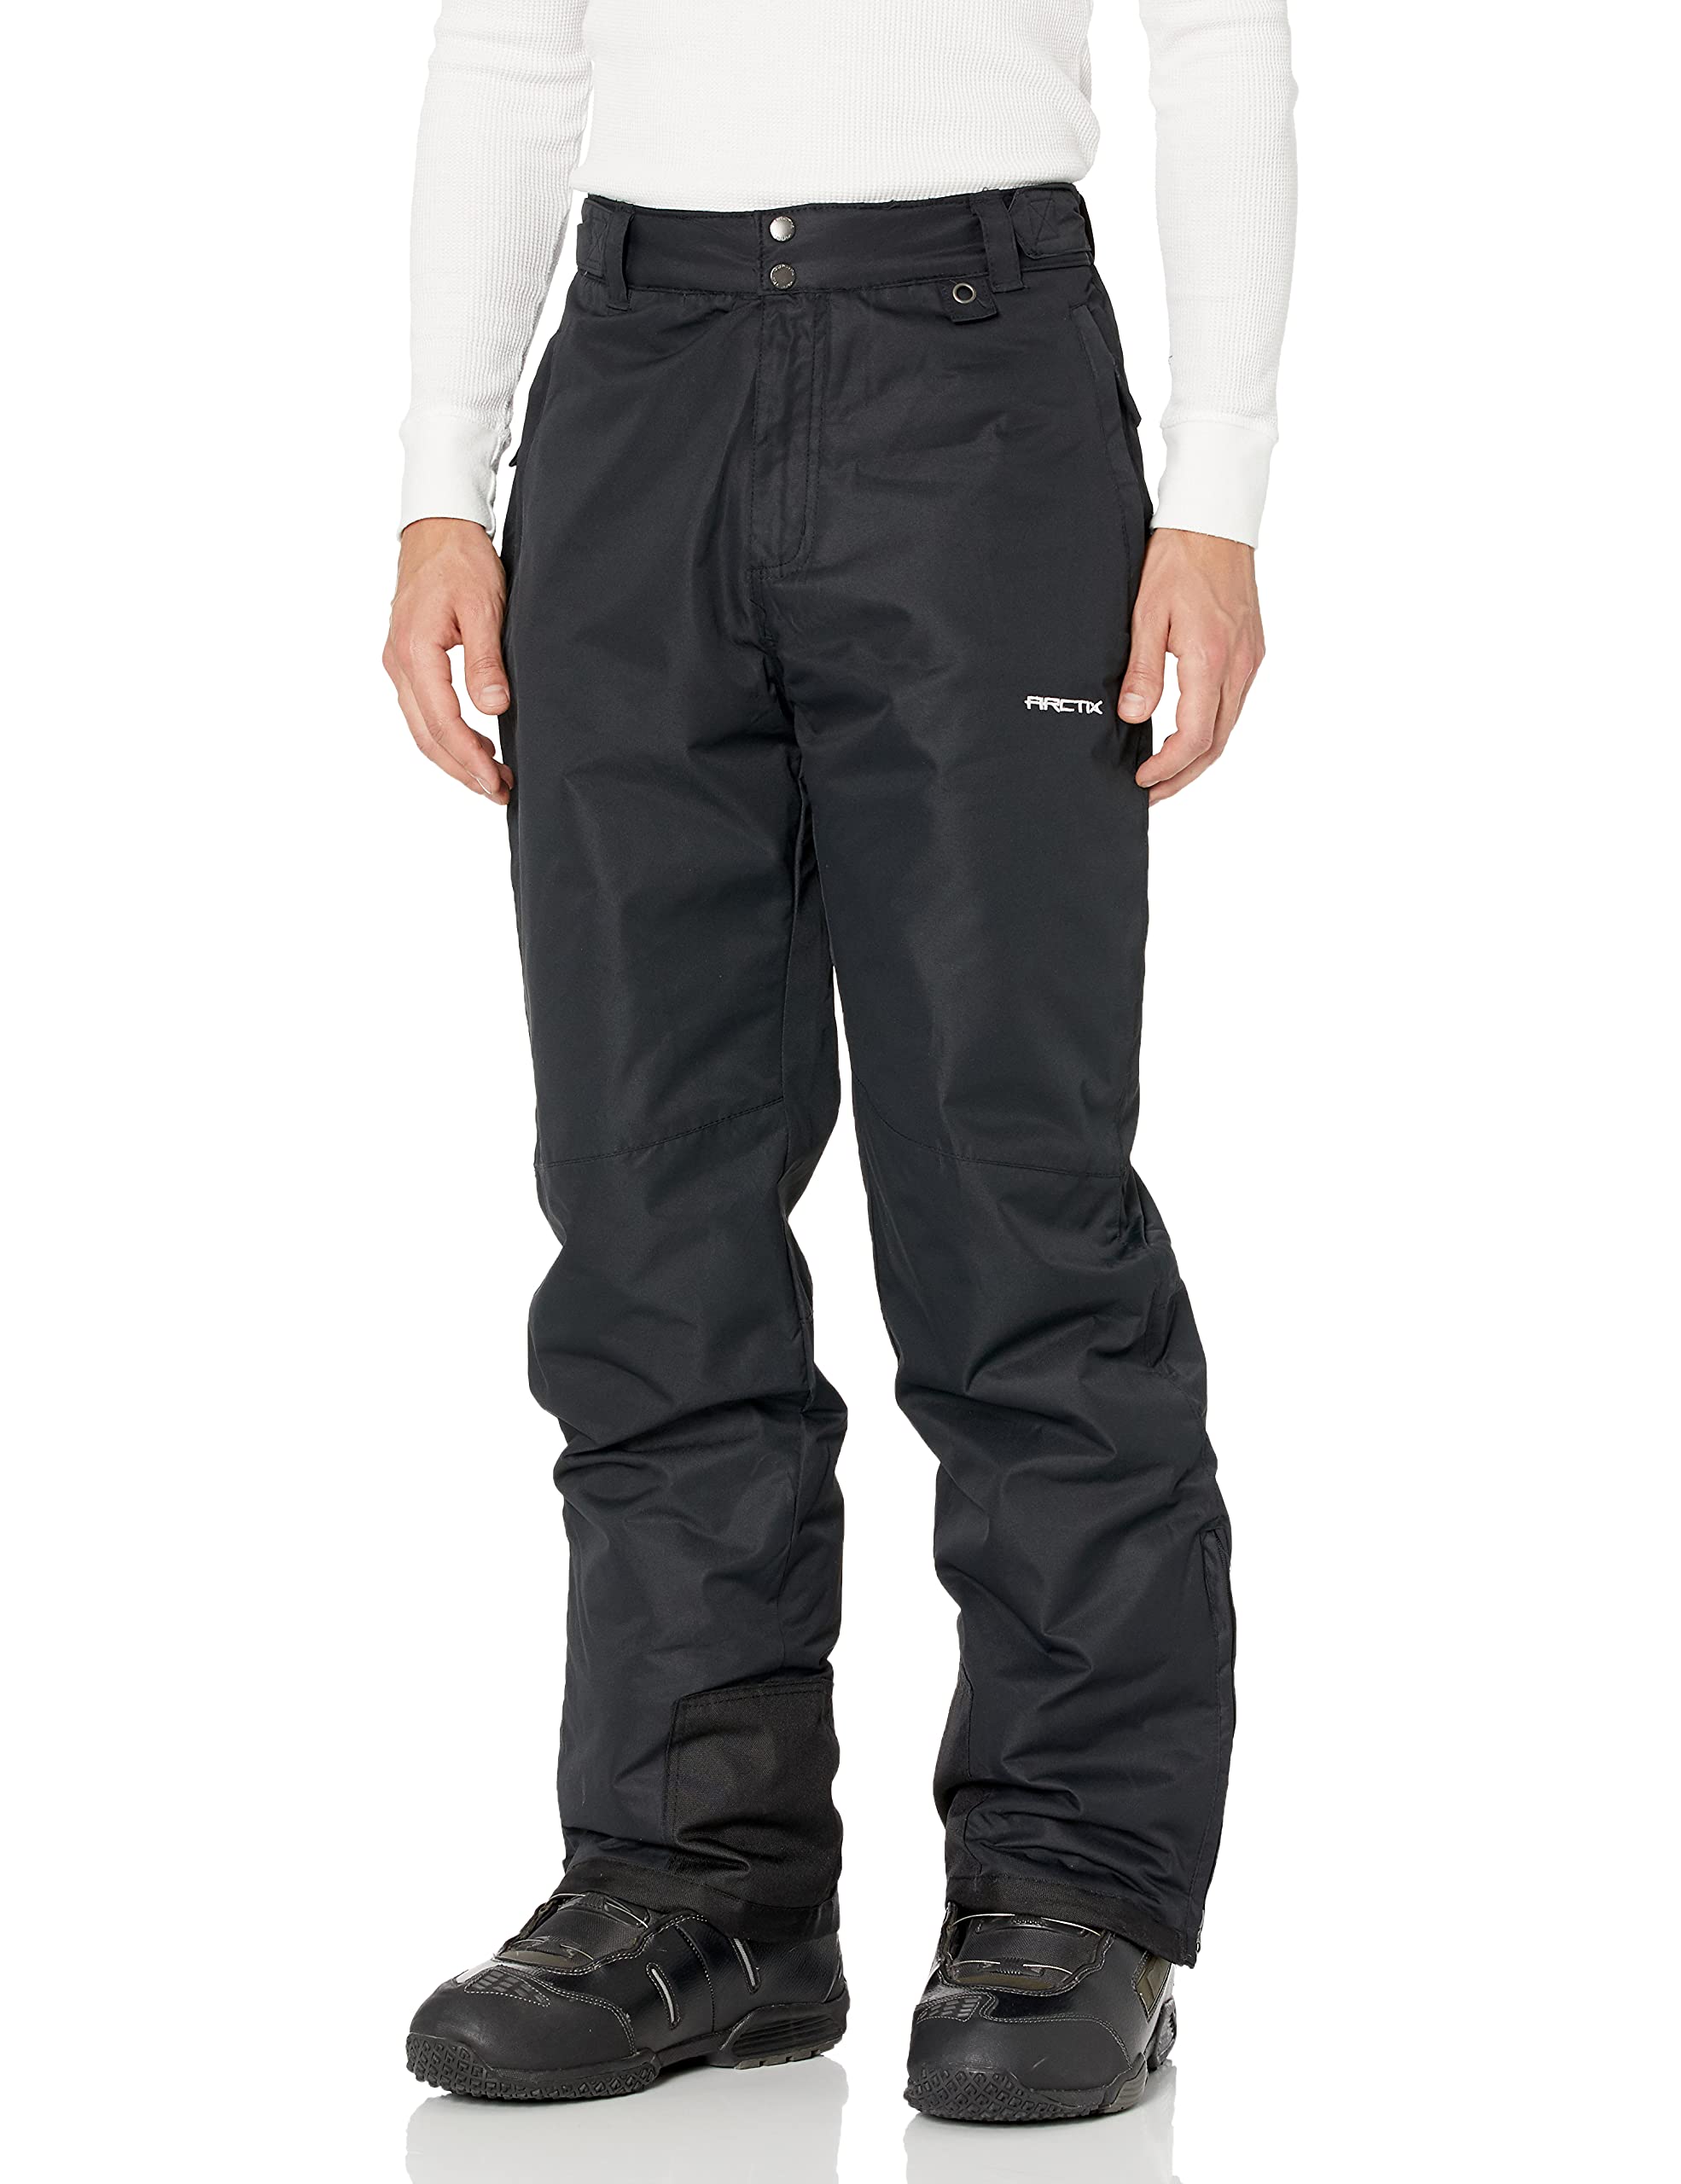 Arctix Men's Essential Snow Pants 32 - Black / Large/32